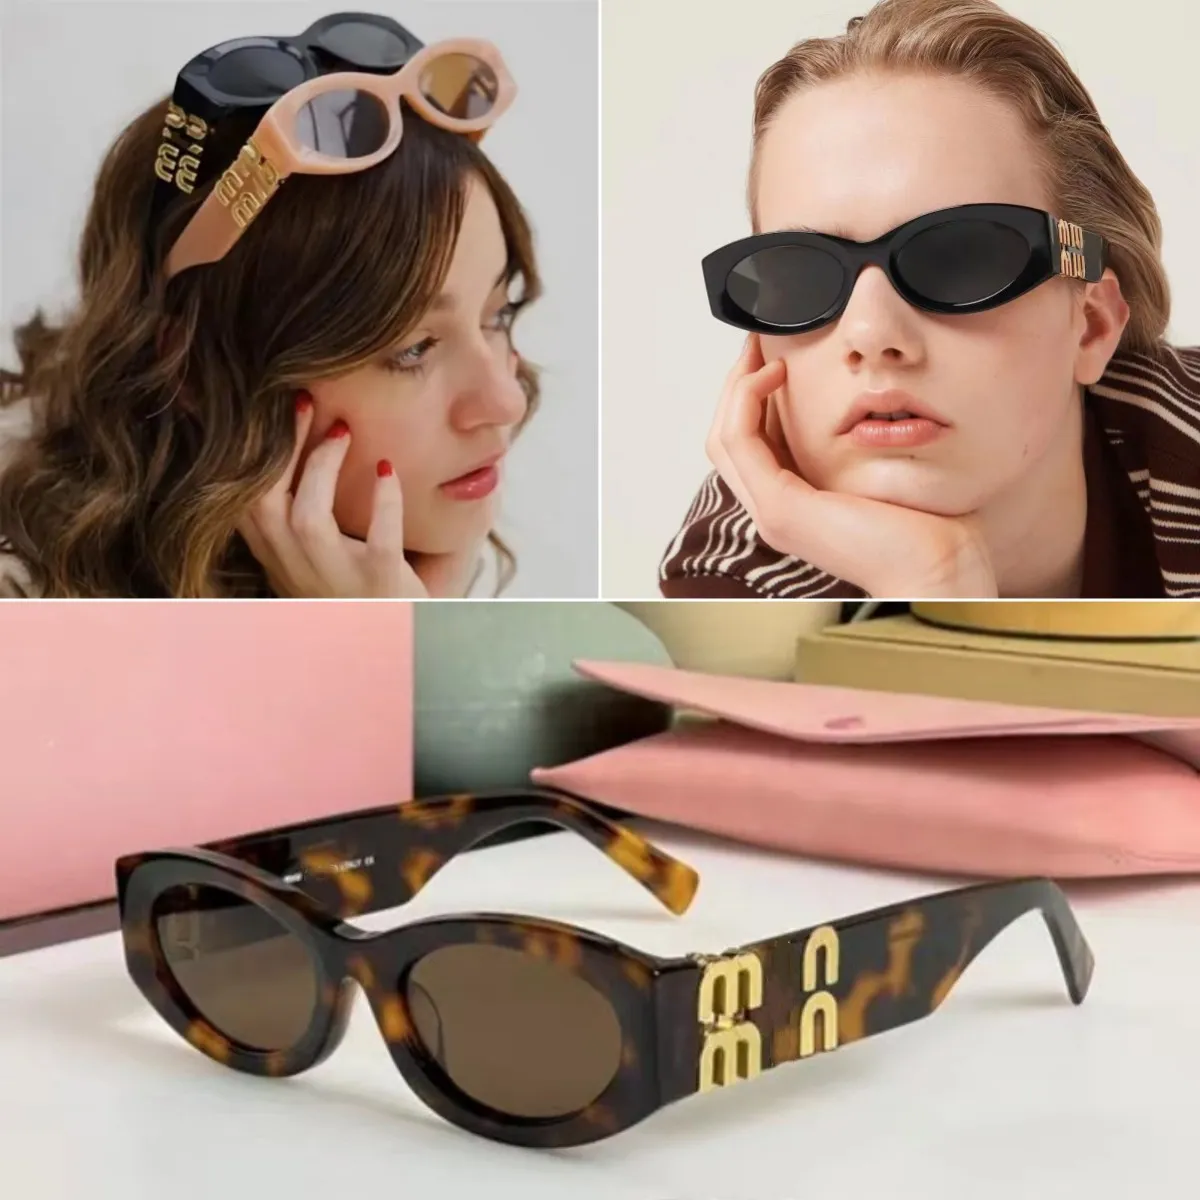 Mu güneş gözlükleri tasarımcı güneş gözlüğü oval çerçeve kadın gözlükler uv sıcak satış mülk kare güneş gözlüğü metal bacaklar MIU harf tasarım gözlükleri orijinal kutu ile